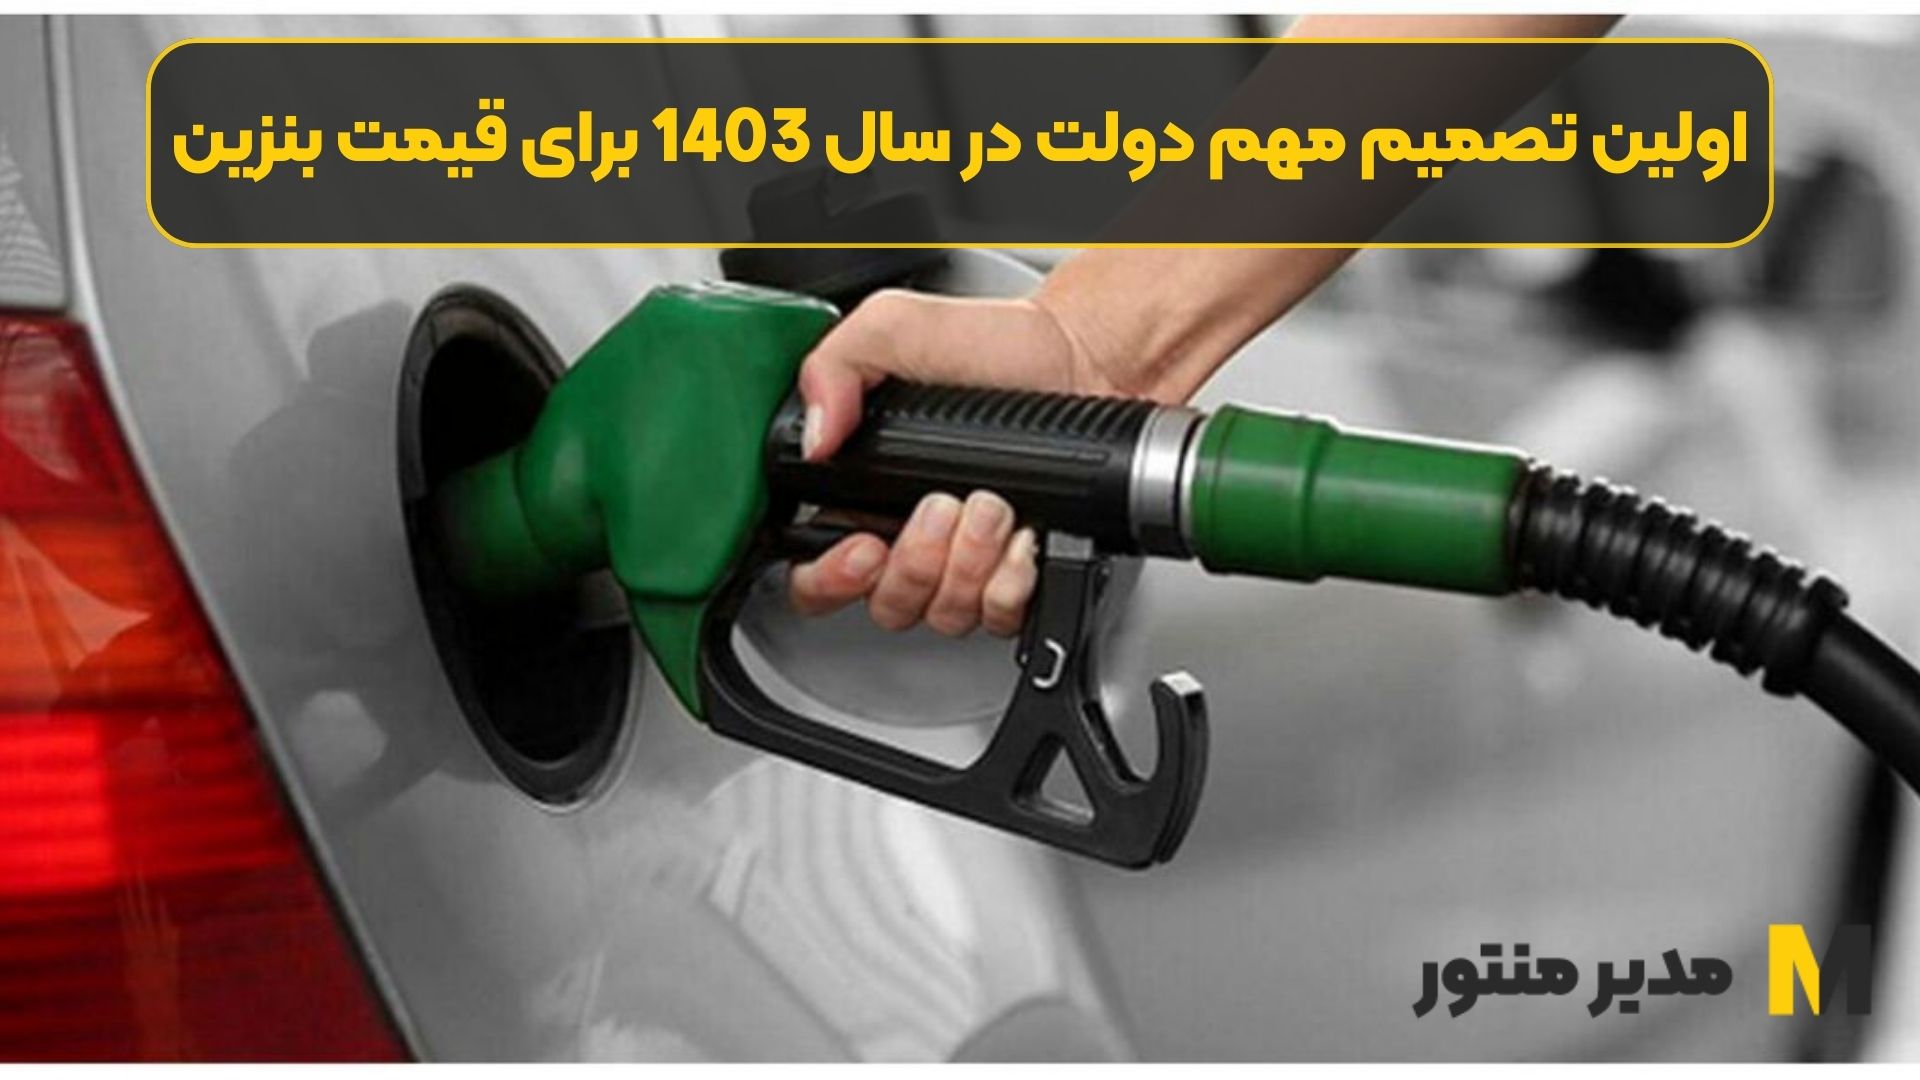 اولین تصمیم مهم دولت در سال 1403 برای قیمت بنزین